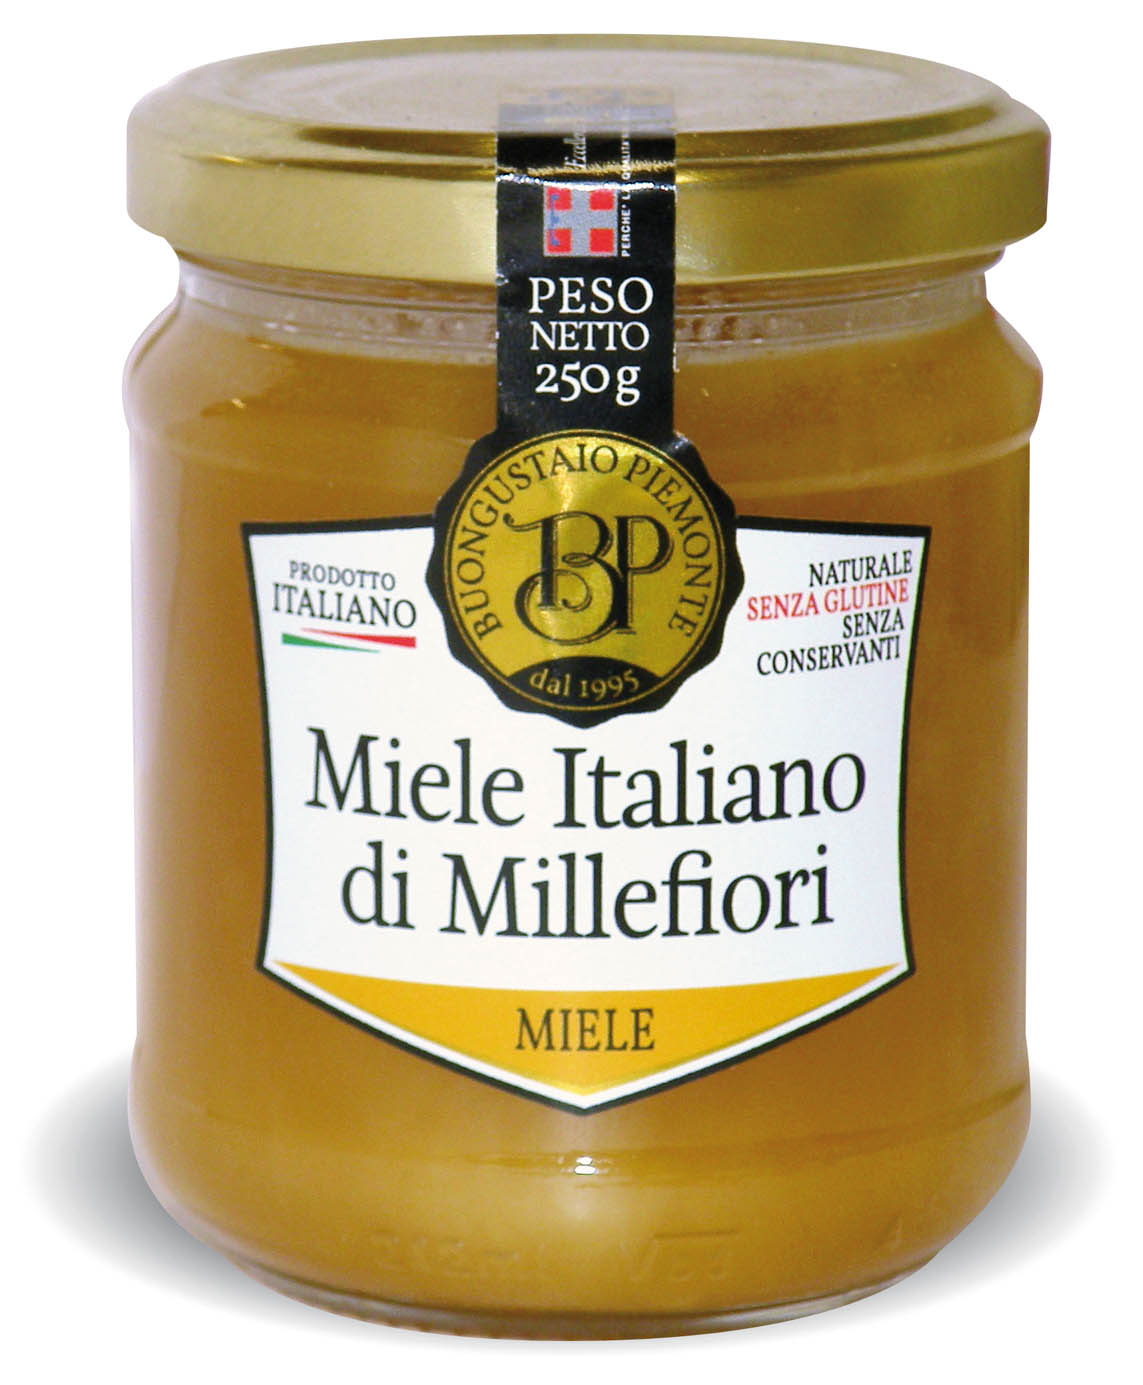 Miele Italiano di Millefiori